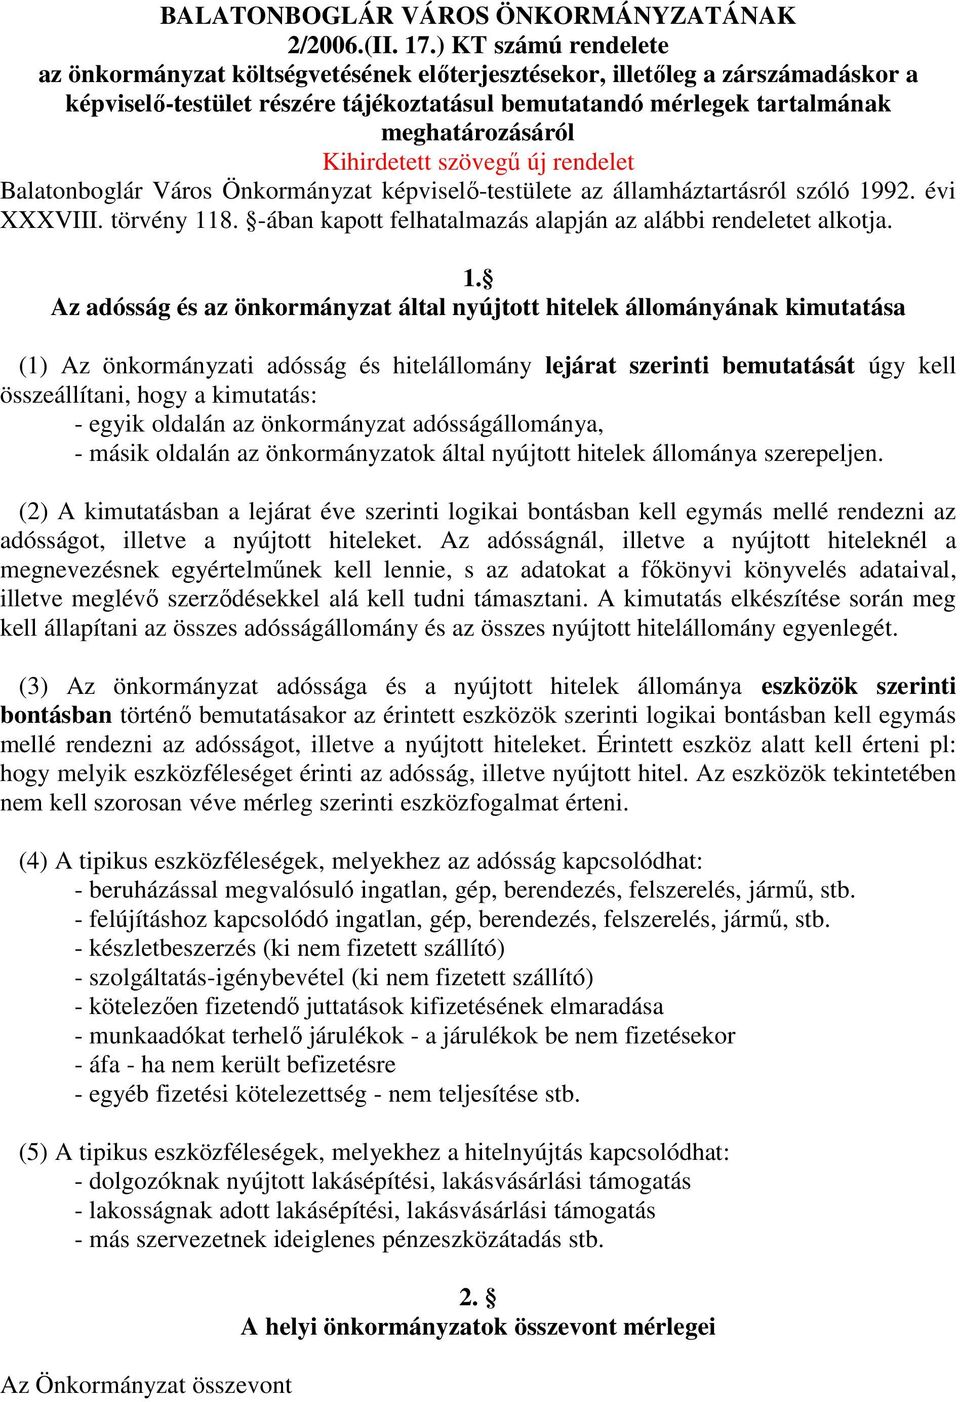 Kihirdetett szövegő új rendelet Balatonboglár Város Önkormányzat képviselı-testülete az államháztartásról szóló 1992. évi XXXVIII. törvény 118.